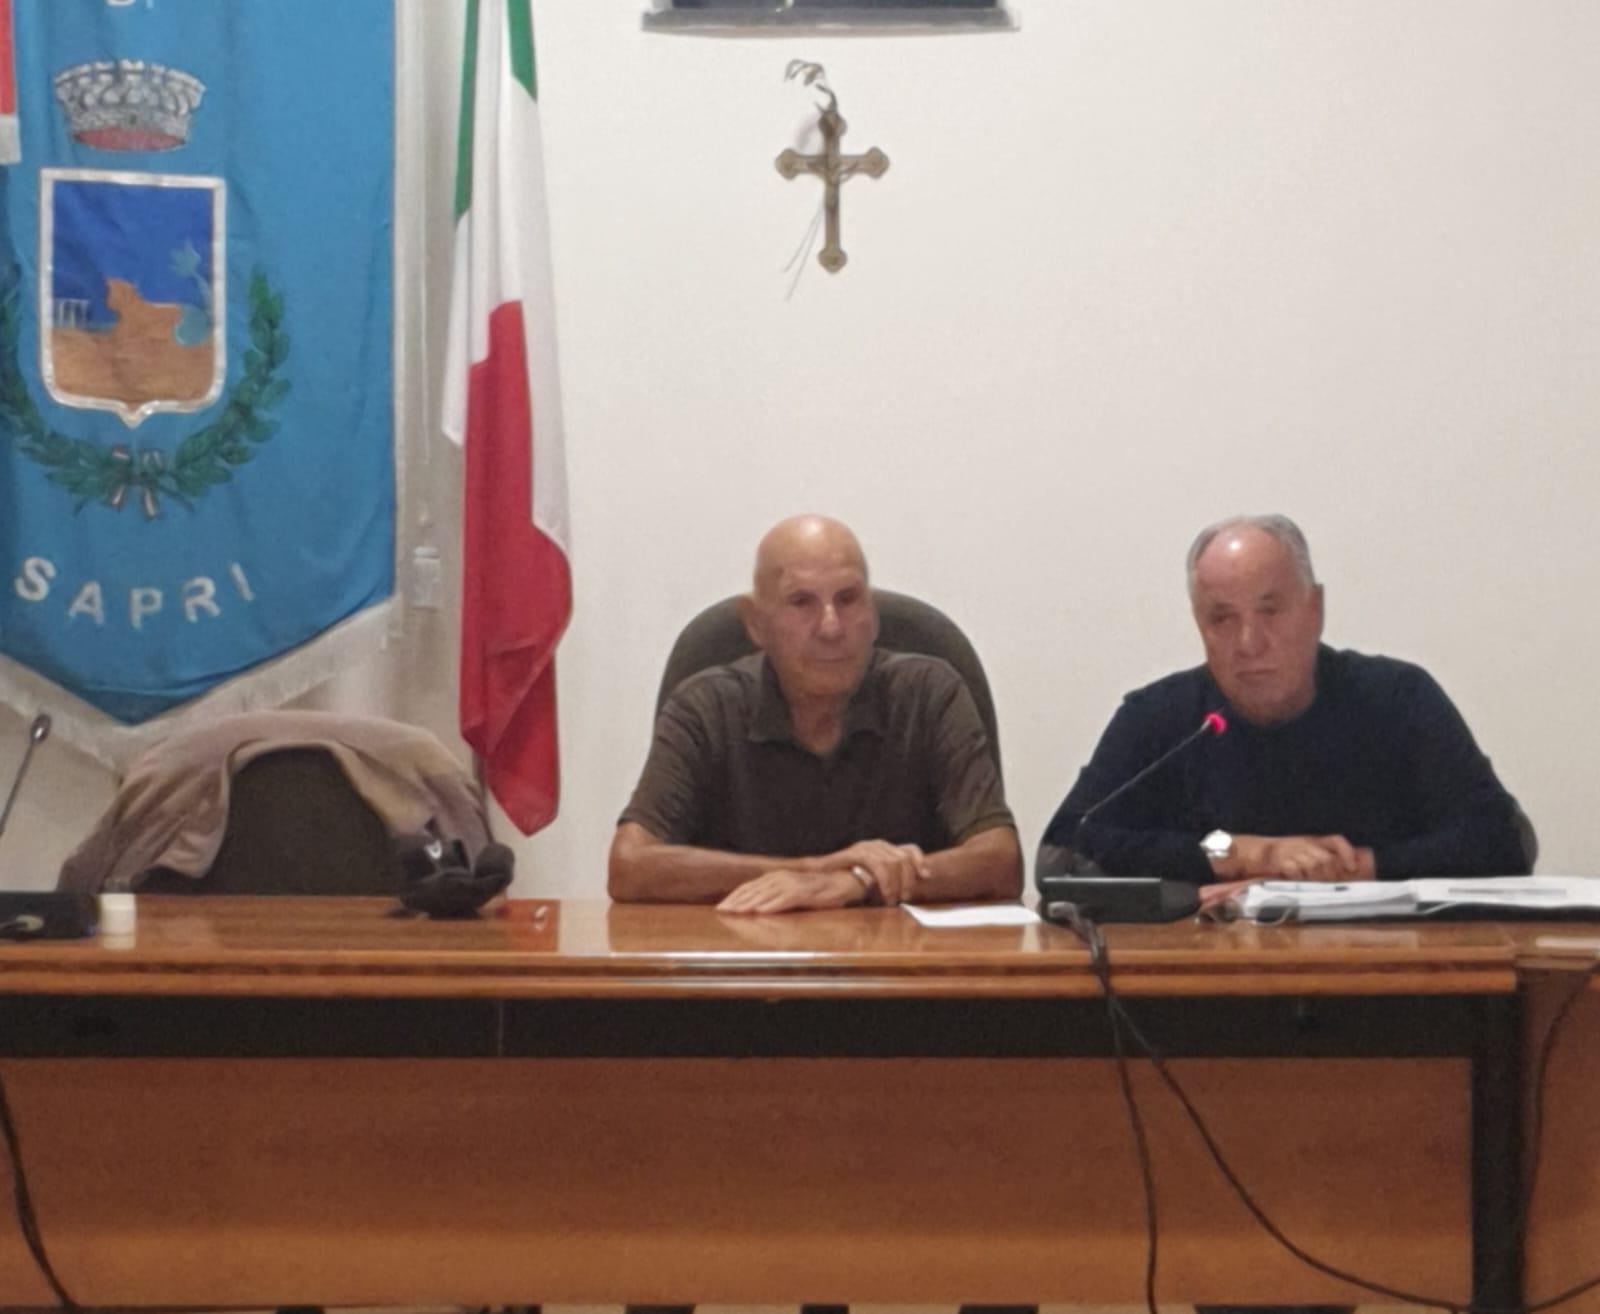 Alta velocità e ospedale temi prioritari a Sapri.  Comitati cittadini uniti per la difesa del golfo di Policastro